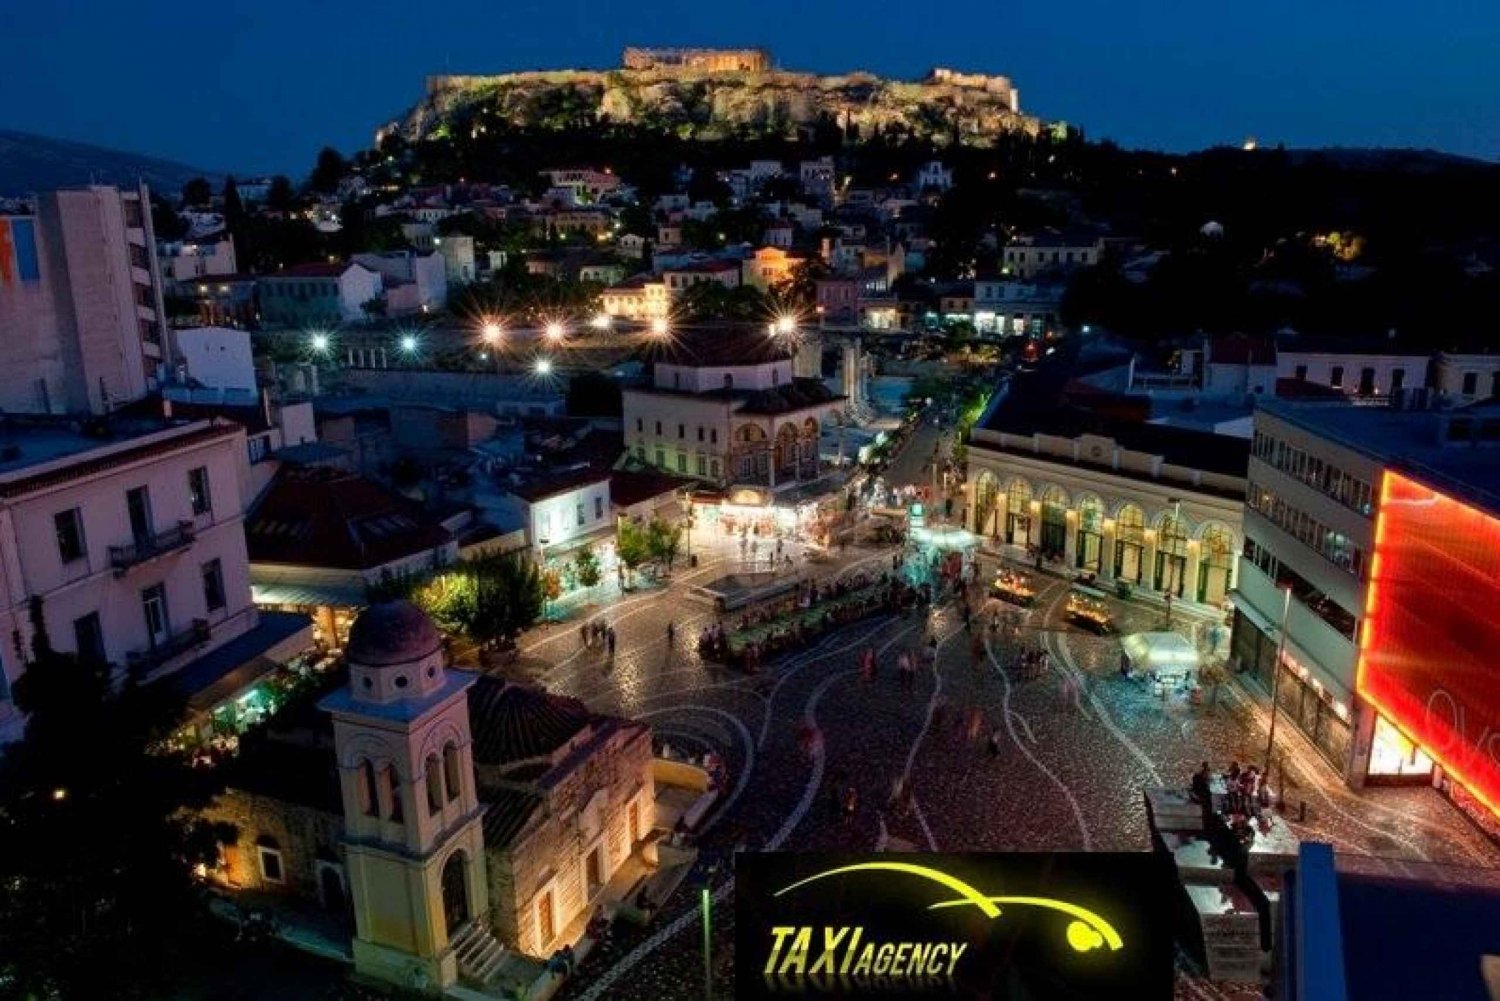 Athen: Transport til/fra Athens flyplass og Athens hoteller